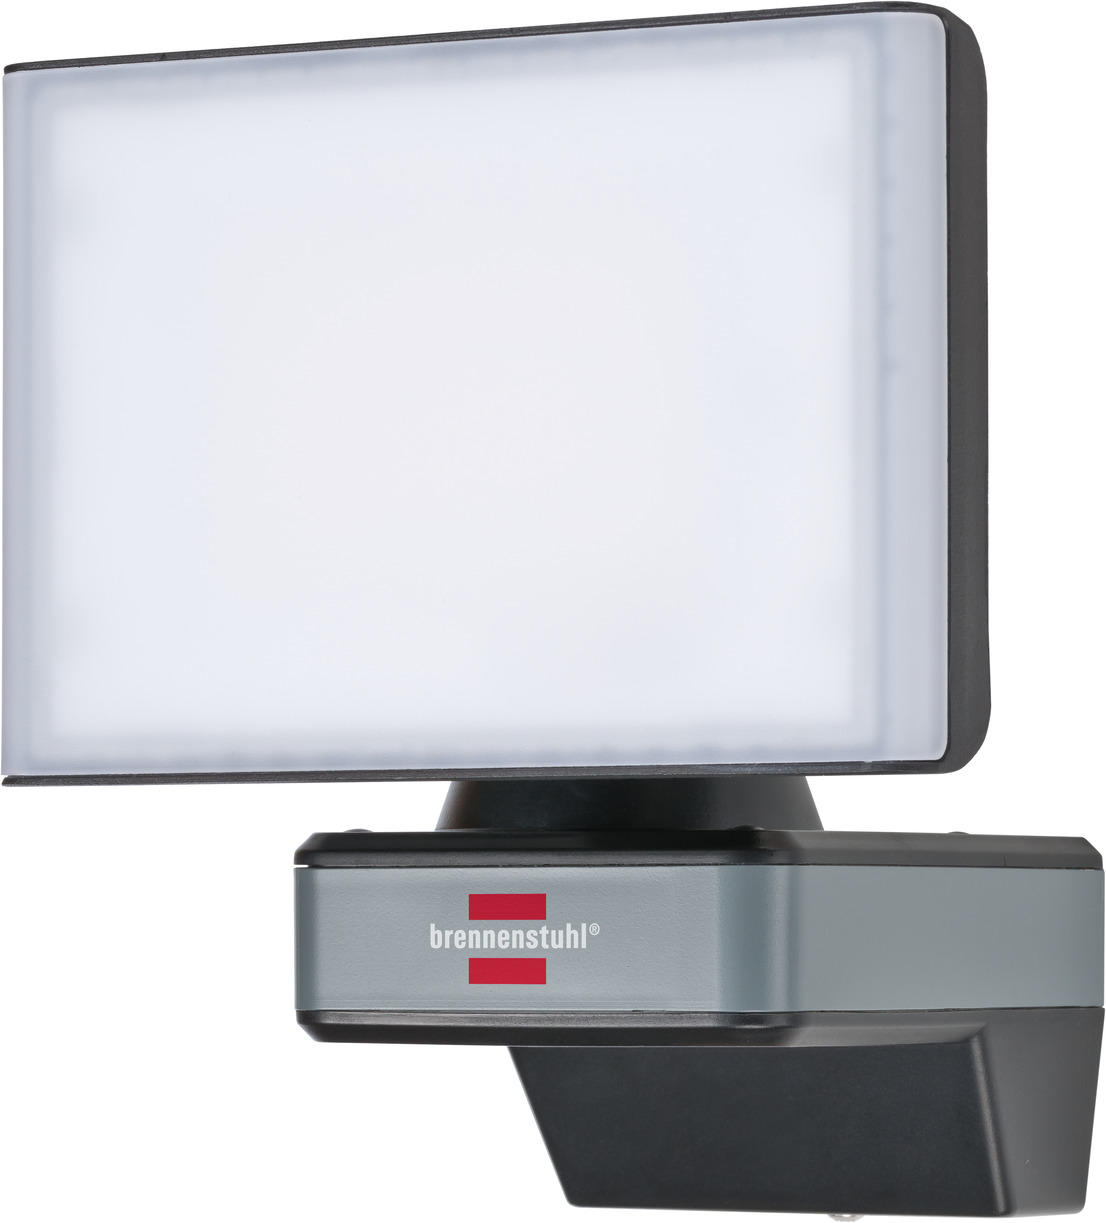 brennenstuhl®Connect LED WiFi Spotlight WF 2050 2400lm, IP54 brennenstuhl® 